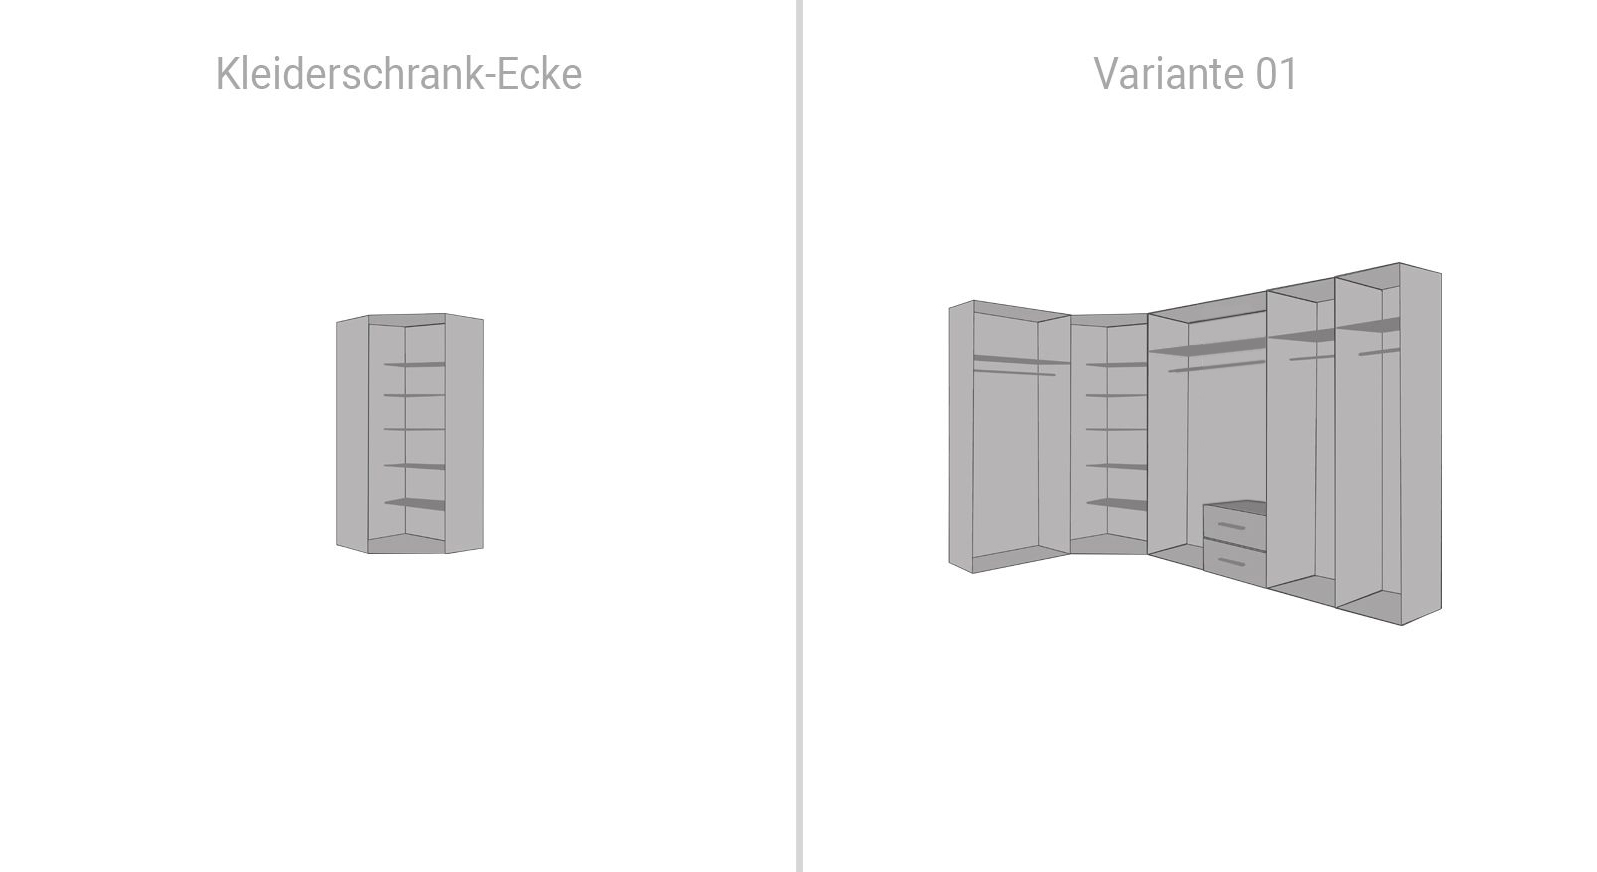 Innenausstattung des Kleiderschrank-Ecks und Eck-Kleiderschranks Denise Variante 01 